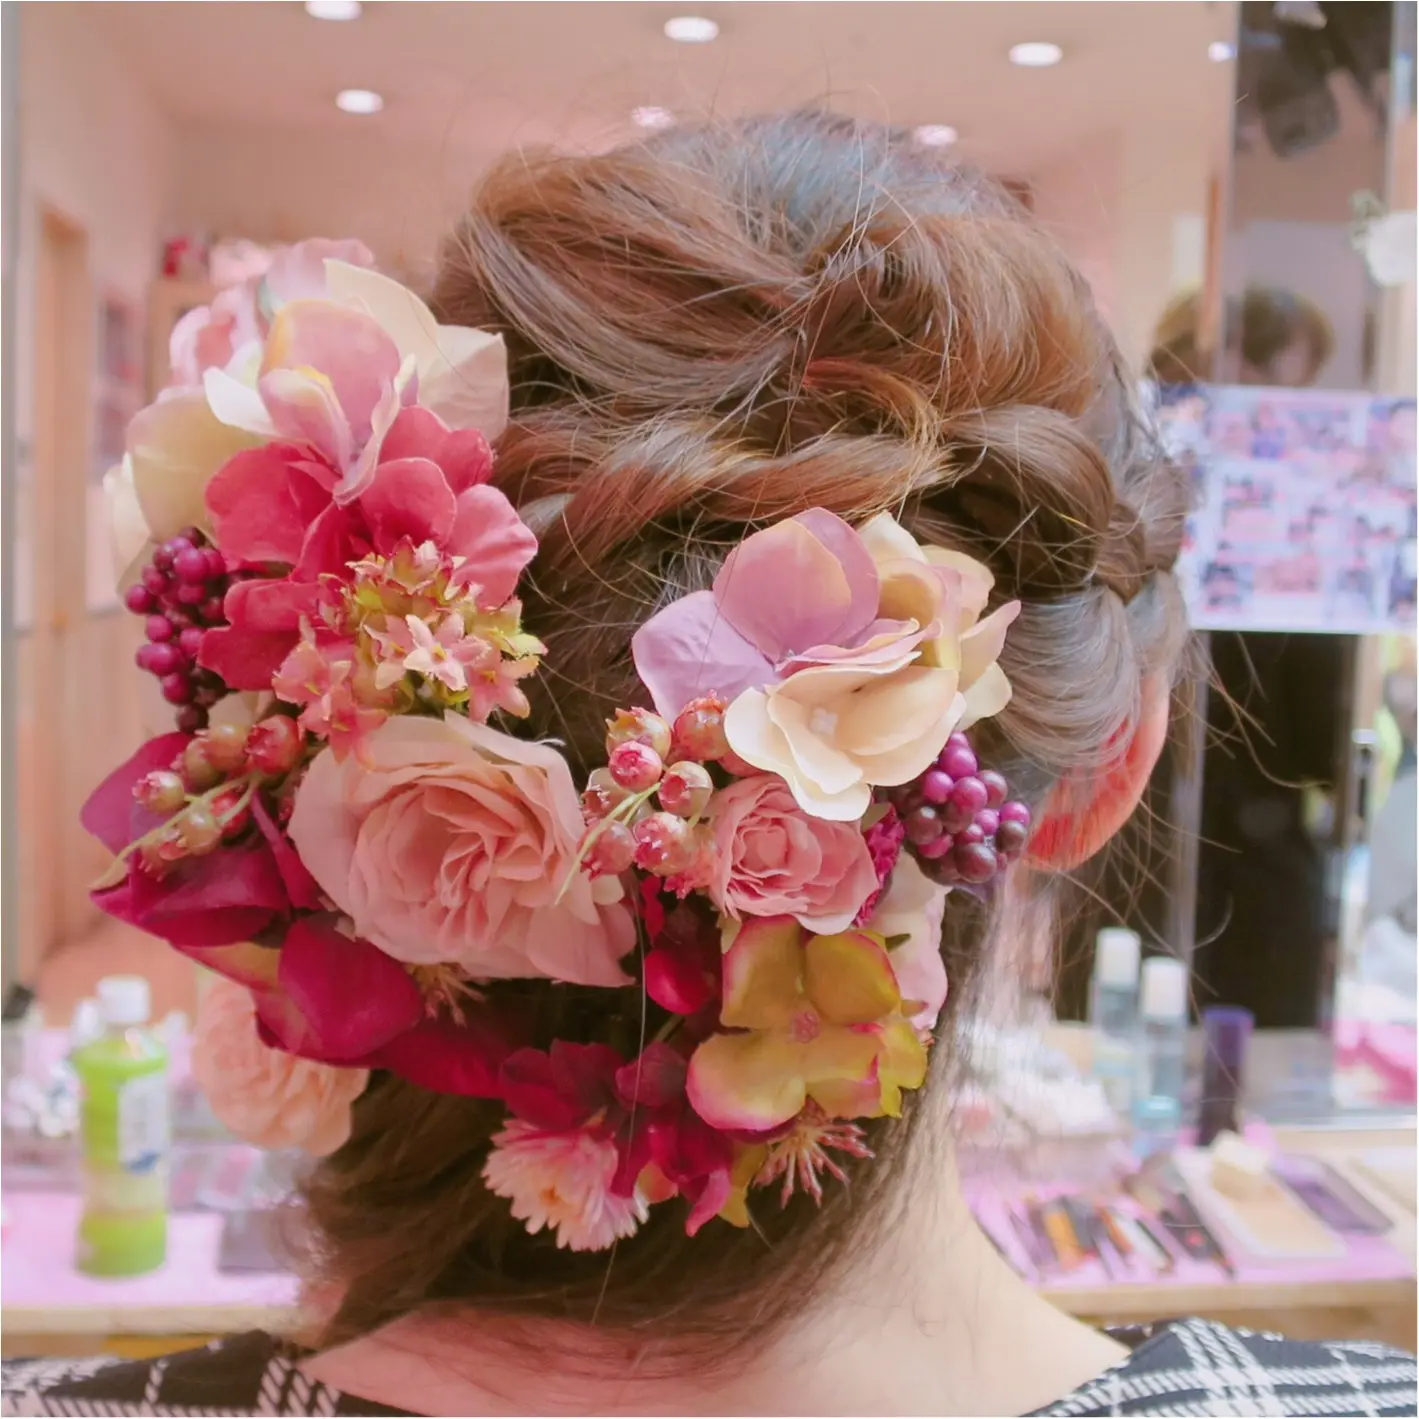 Wedding 私のヘアスタイル かわいいお花でラプンツェルみたいに 結婚式で後悔しないようにしておくべきこと Moreインフルエンサーズブログ Daily More